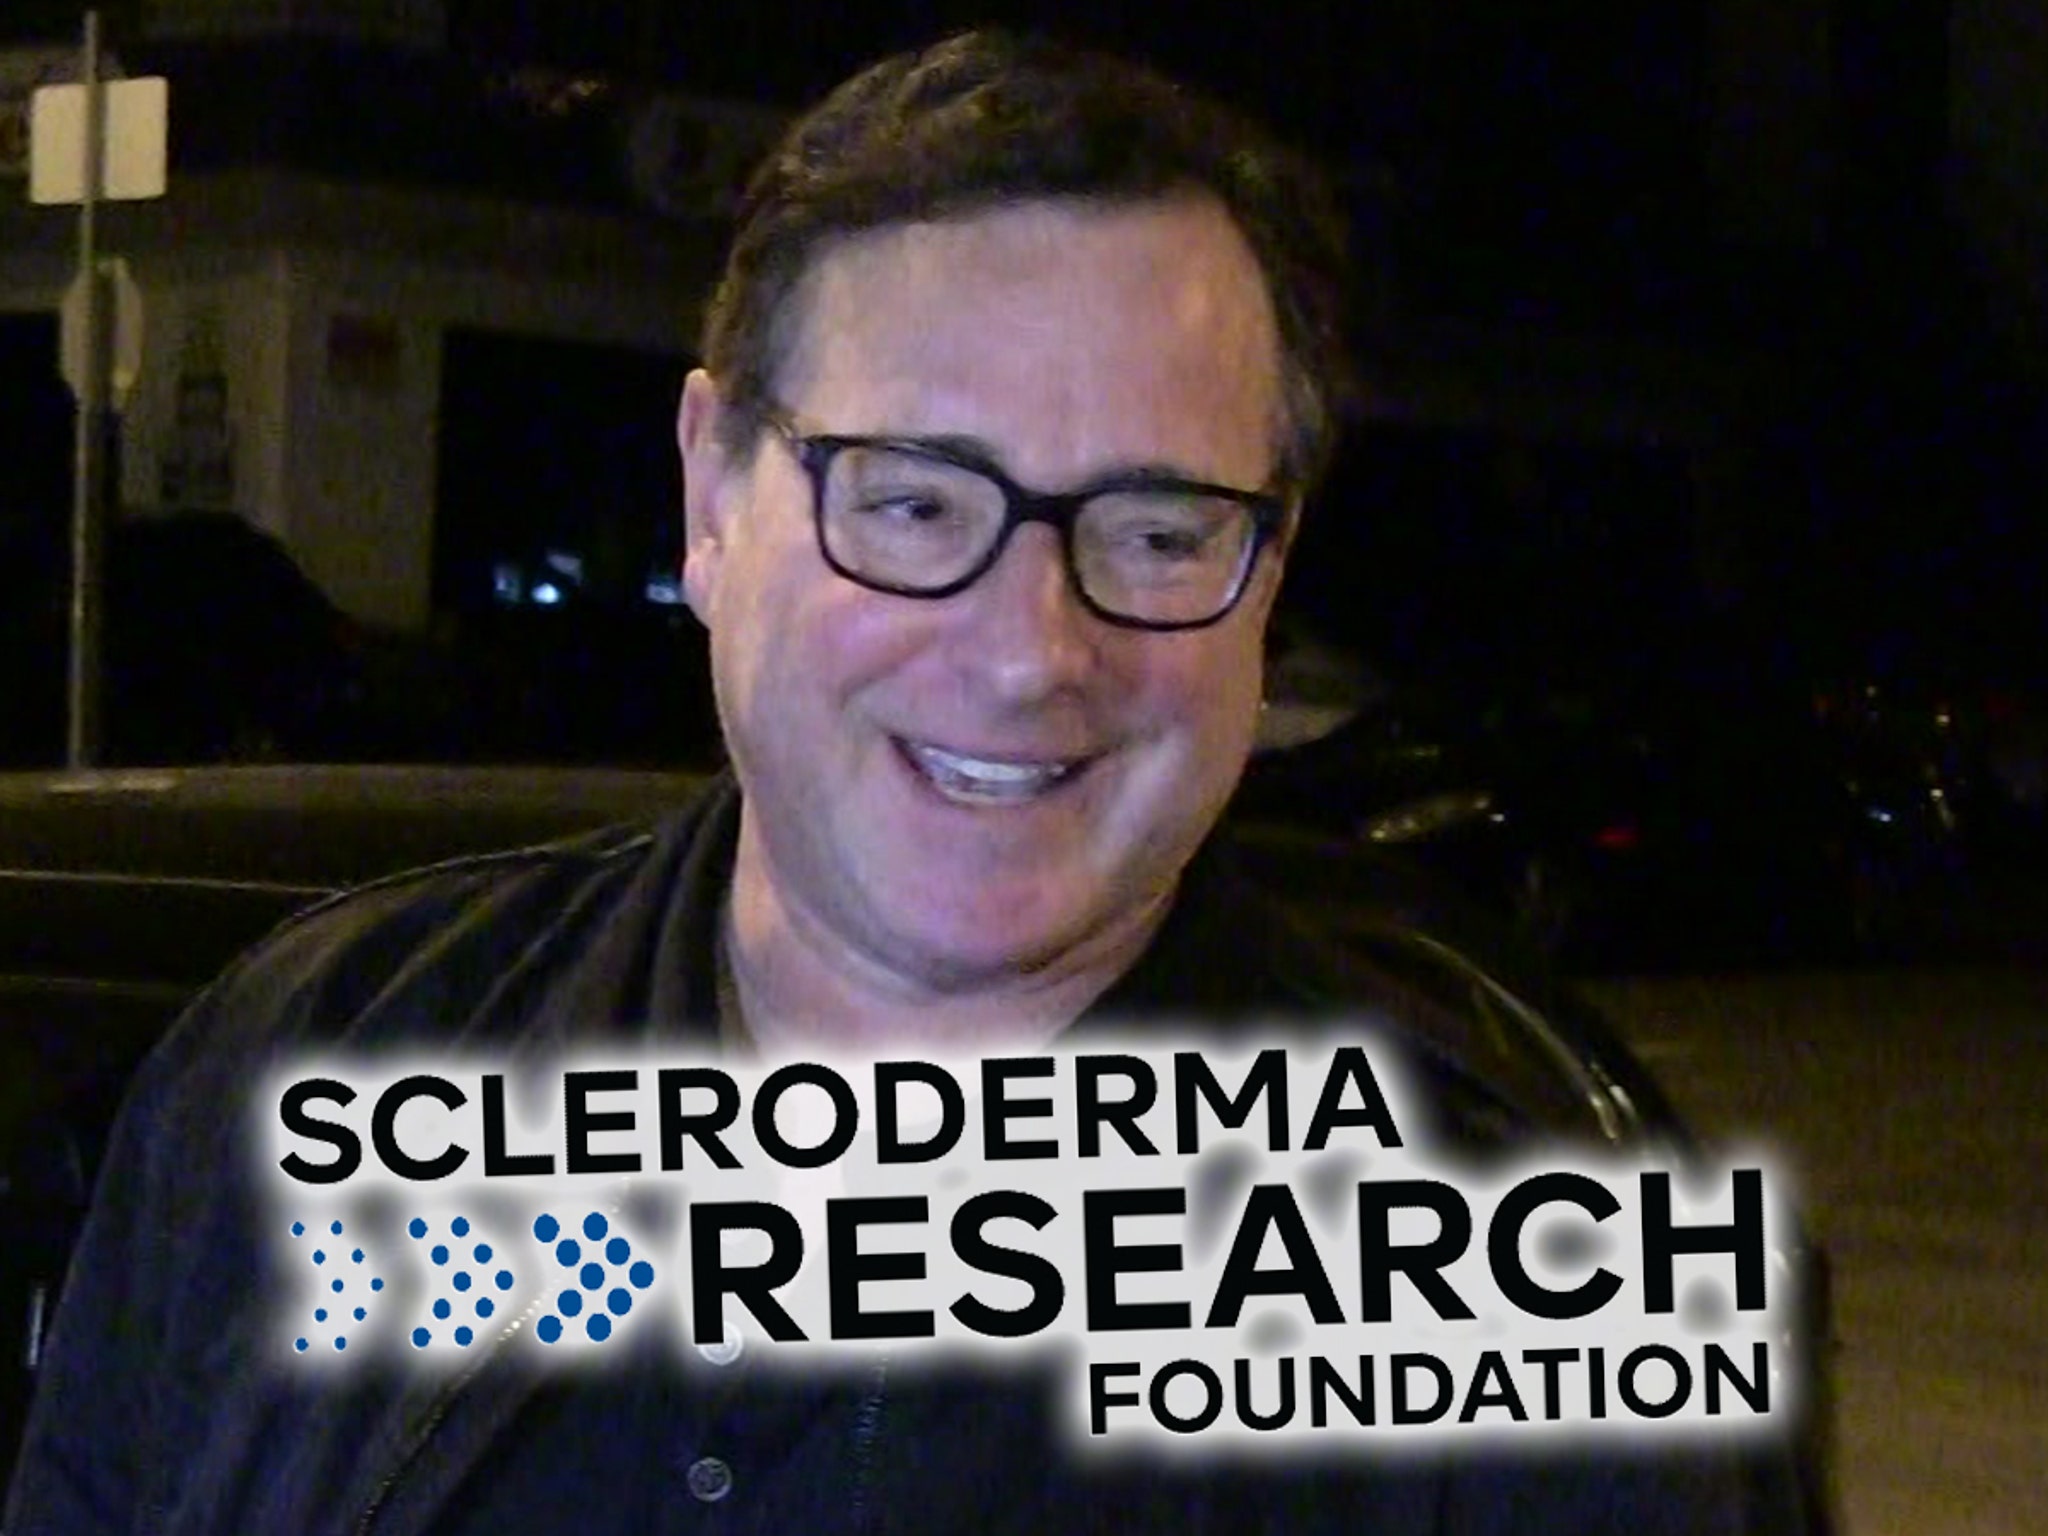 Bob Saget Scleroderma Fundraiser Tribute Show Raises $1.2 Million - TMZ (Picture 1)